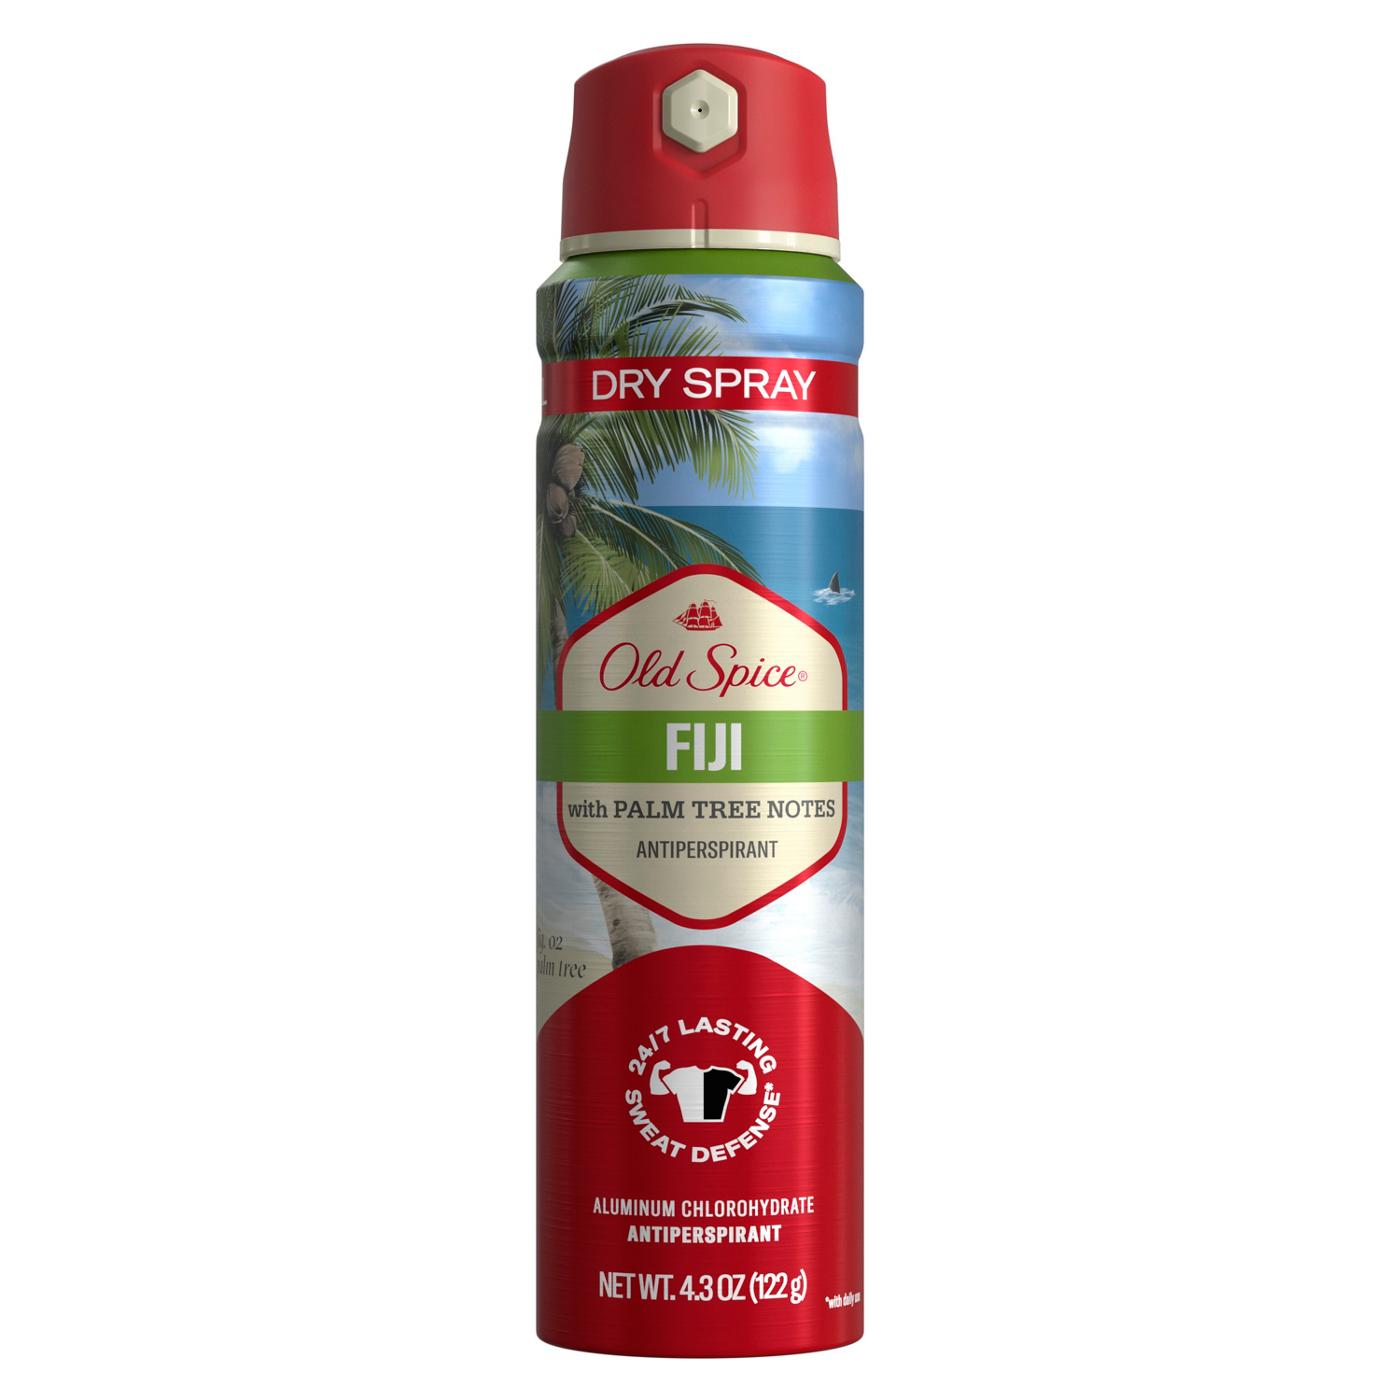 Old Spice Dry Spray Antiperspirant - Fiji; image 1 of 2